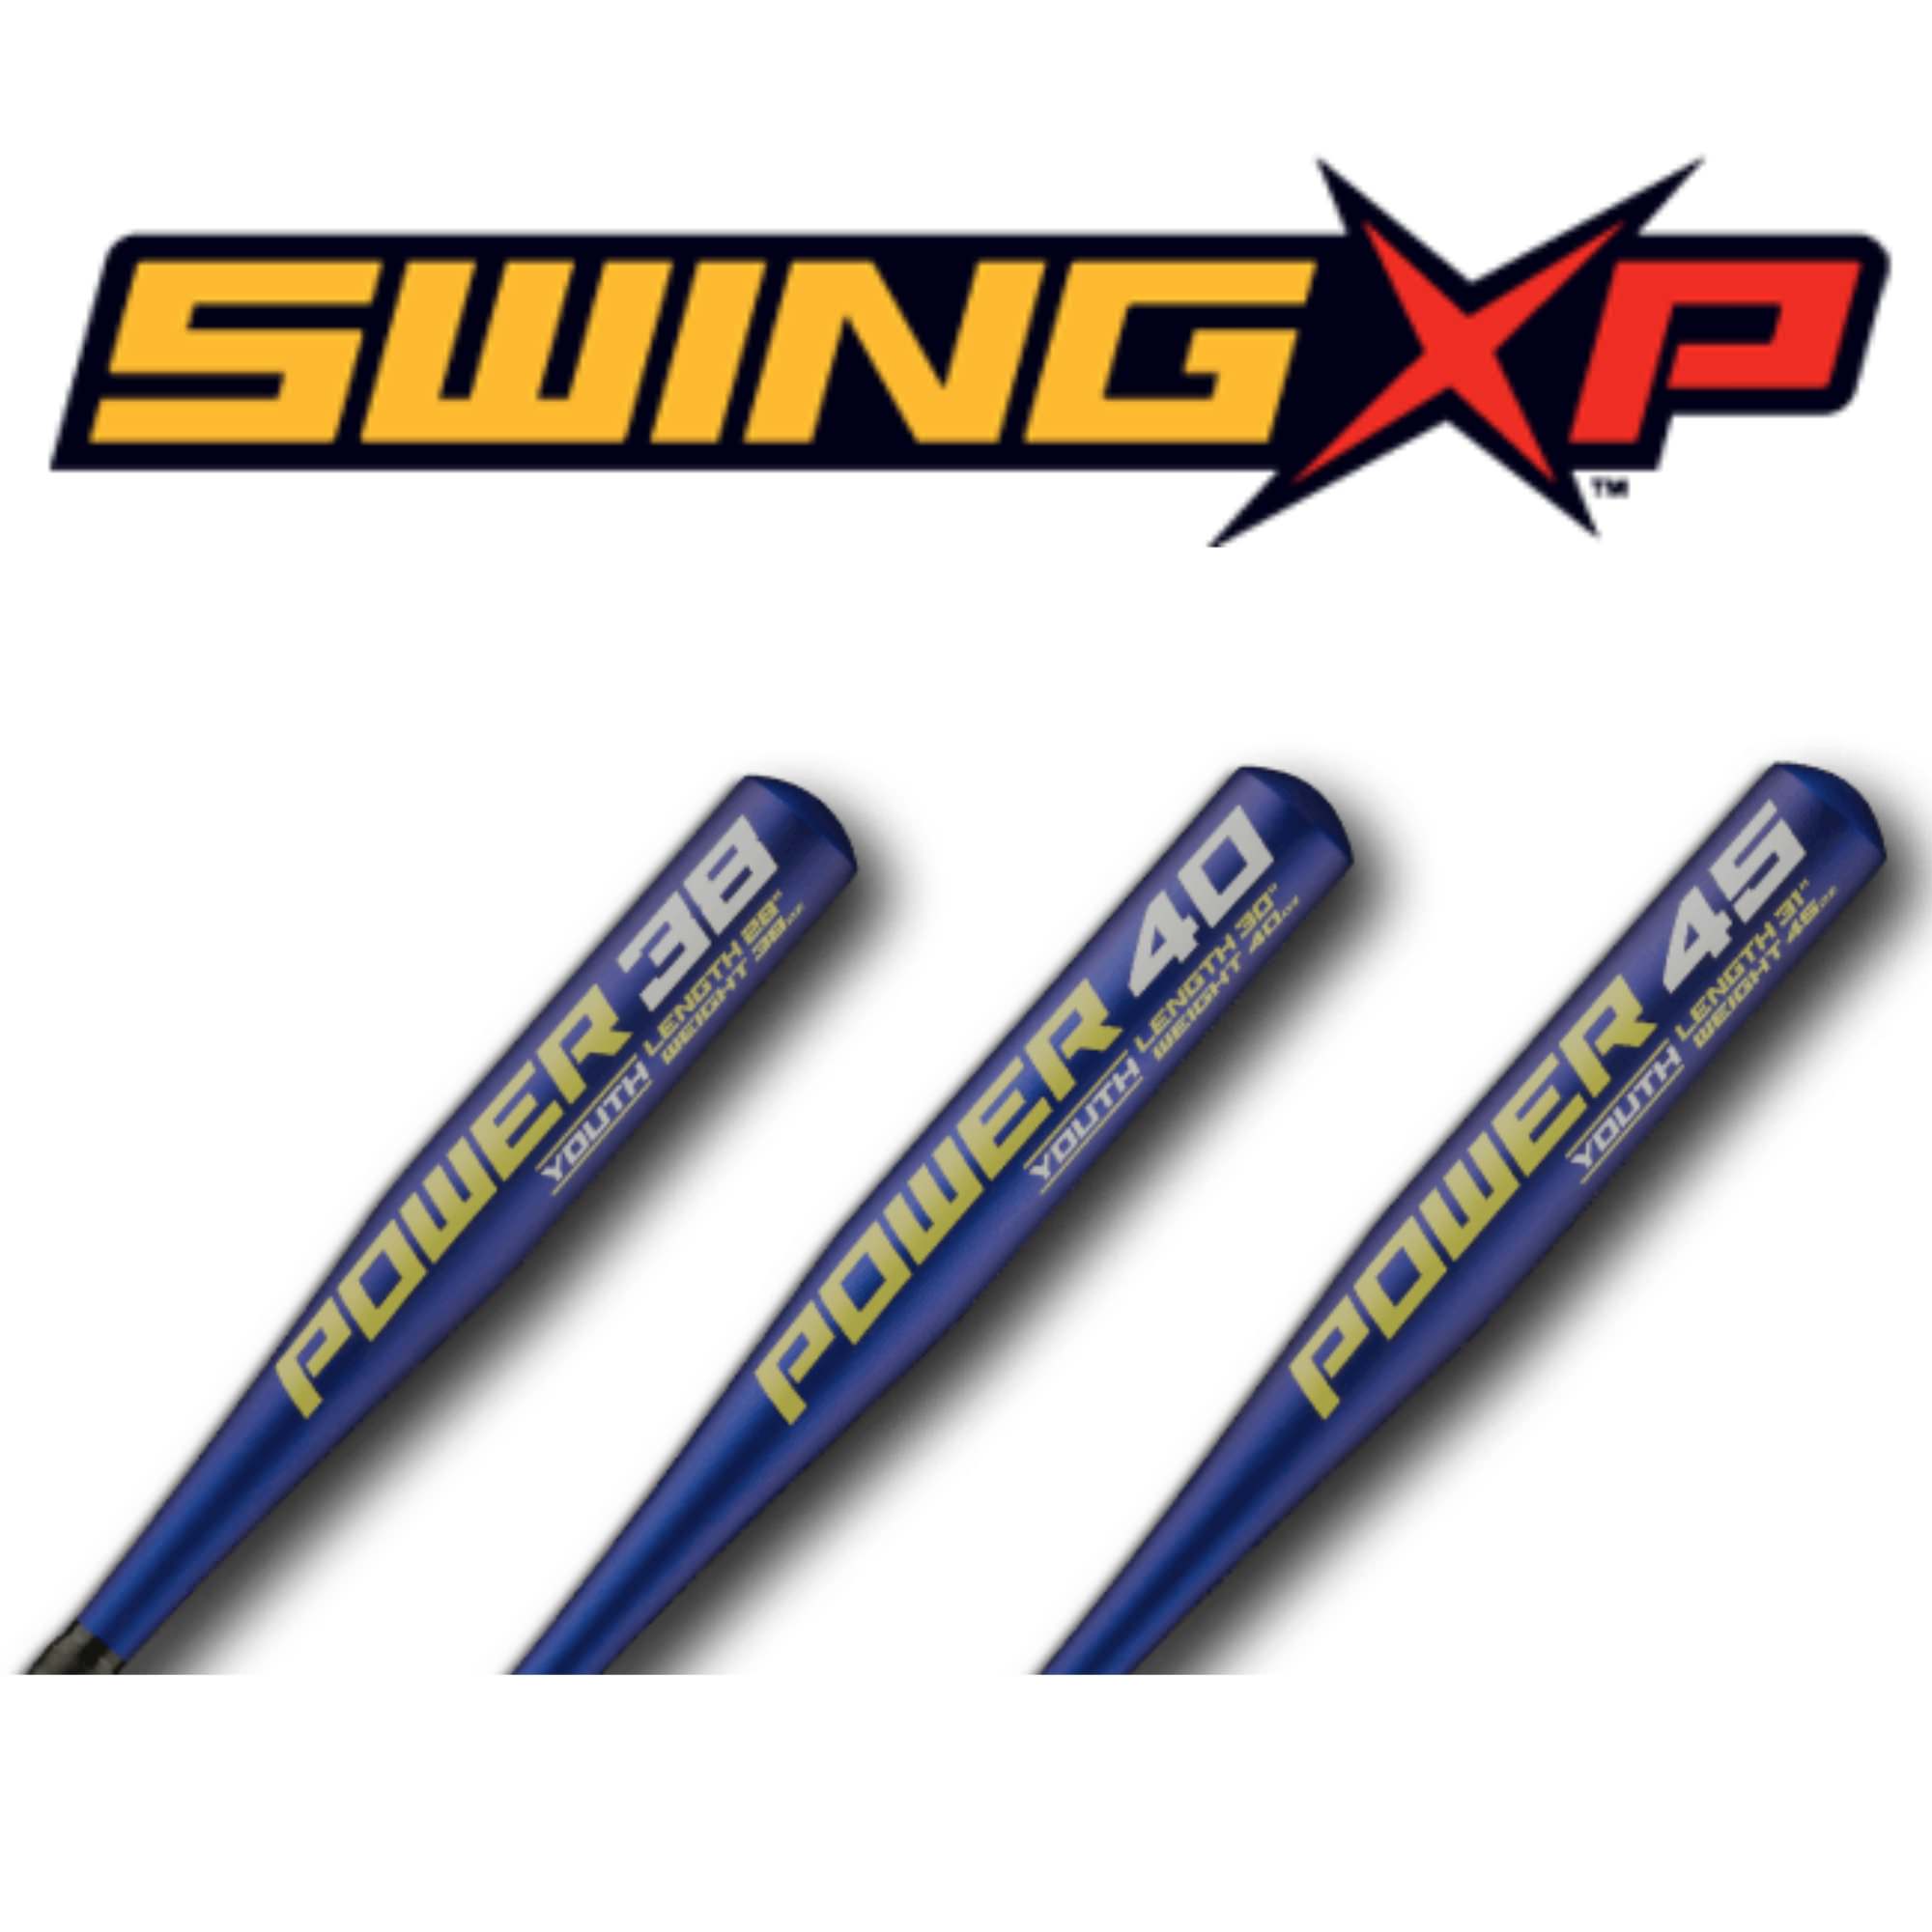 Swing-XP